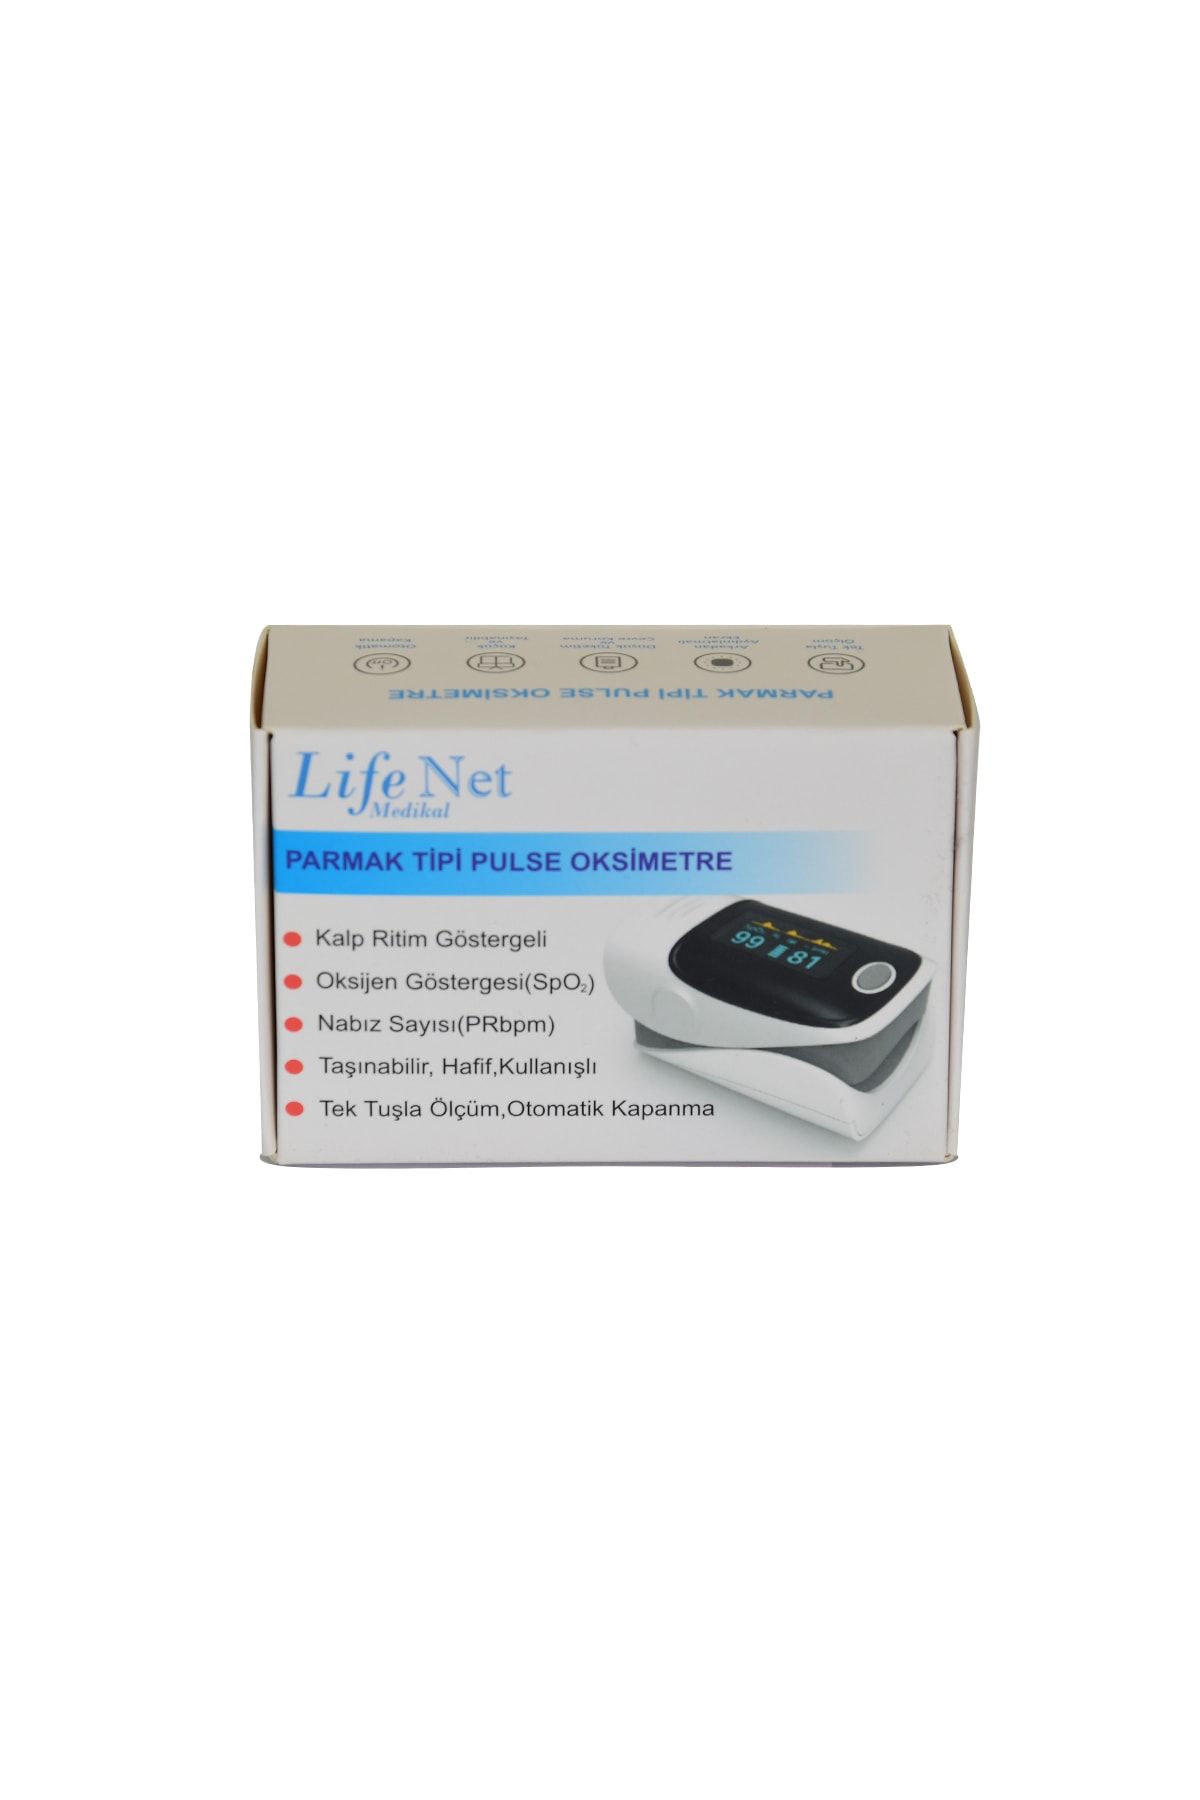 Life Net Medikal Dijital Pulse Oksimetre Parmaktan Nabız Ölçer Taşınabilir Kalp Ritim Göstergeli Oximeter Yk-80a